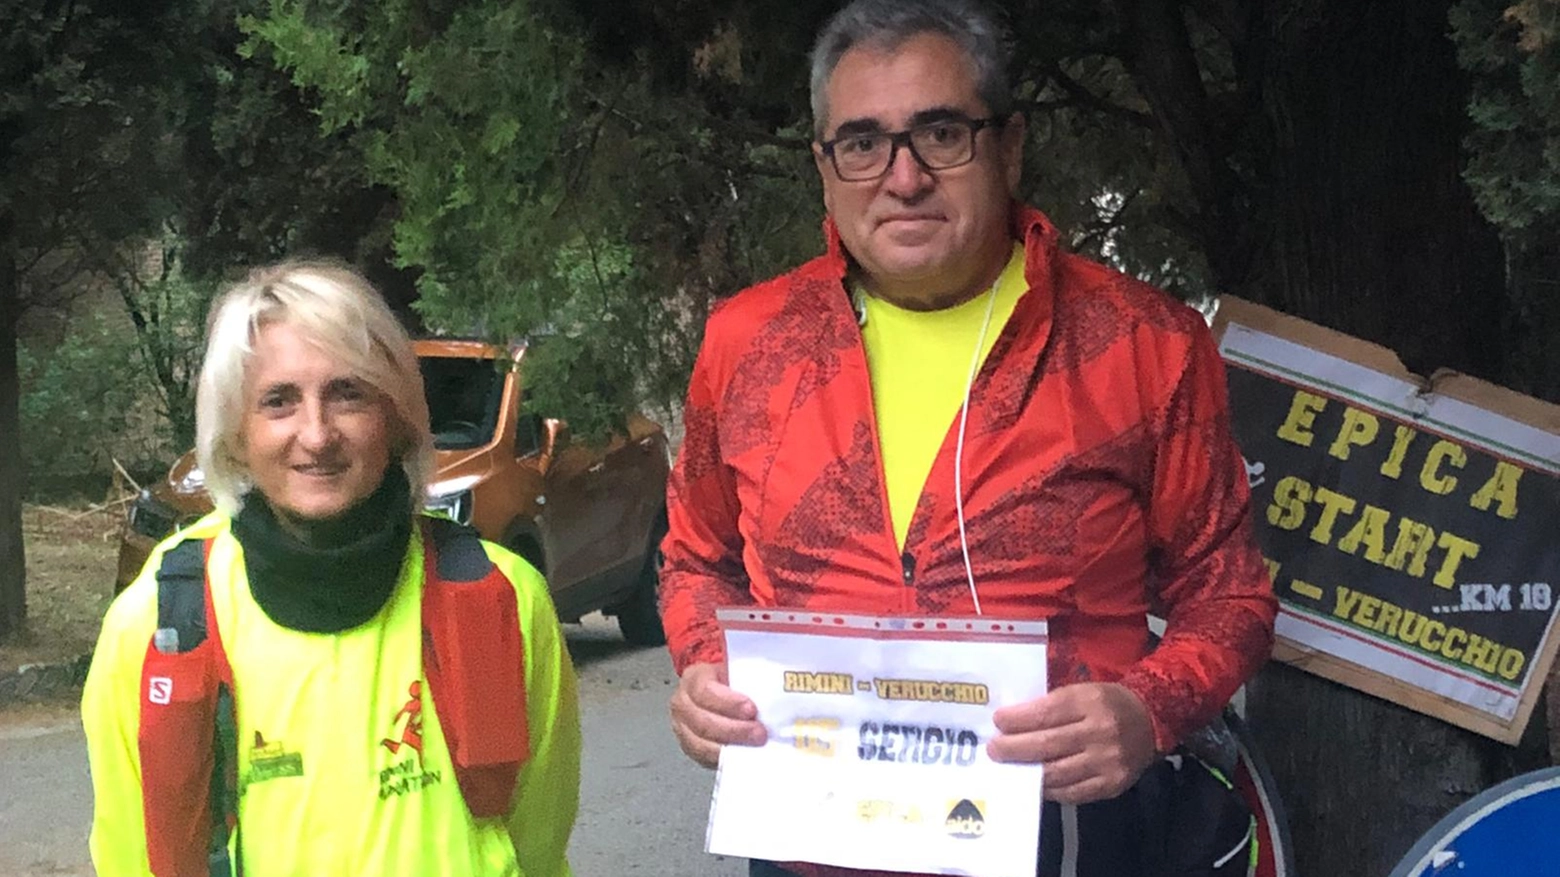 Sergio Lotti, donatore di rene, ha partecipato alla mezza maratona di Rimini